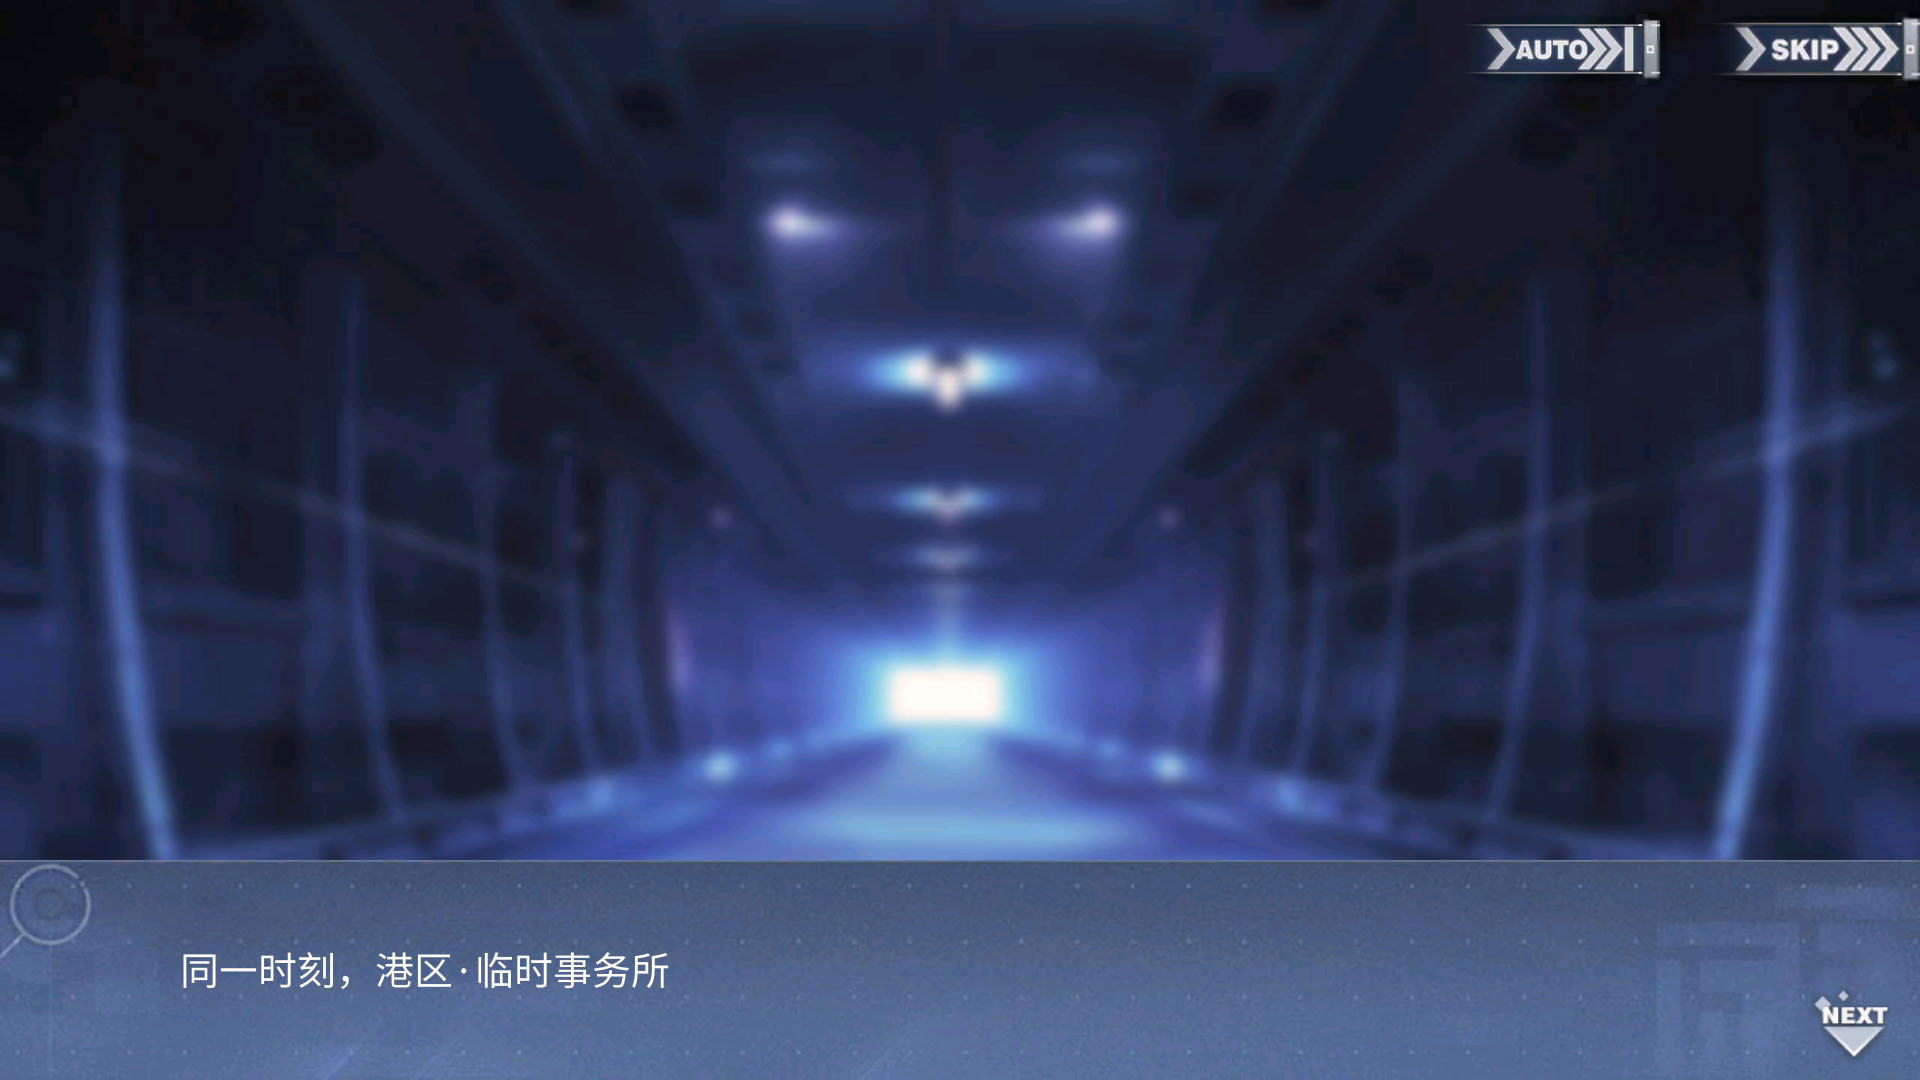 回忆 响彻碧海的偶像歌-关卡篇 通往海色的Destination013.jpg